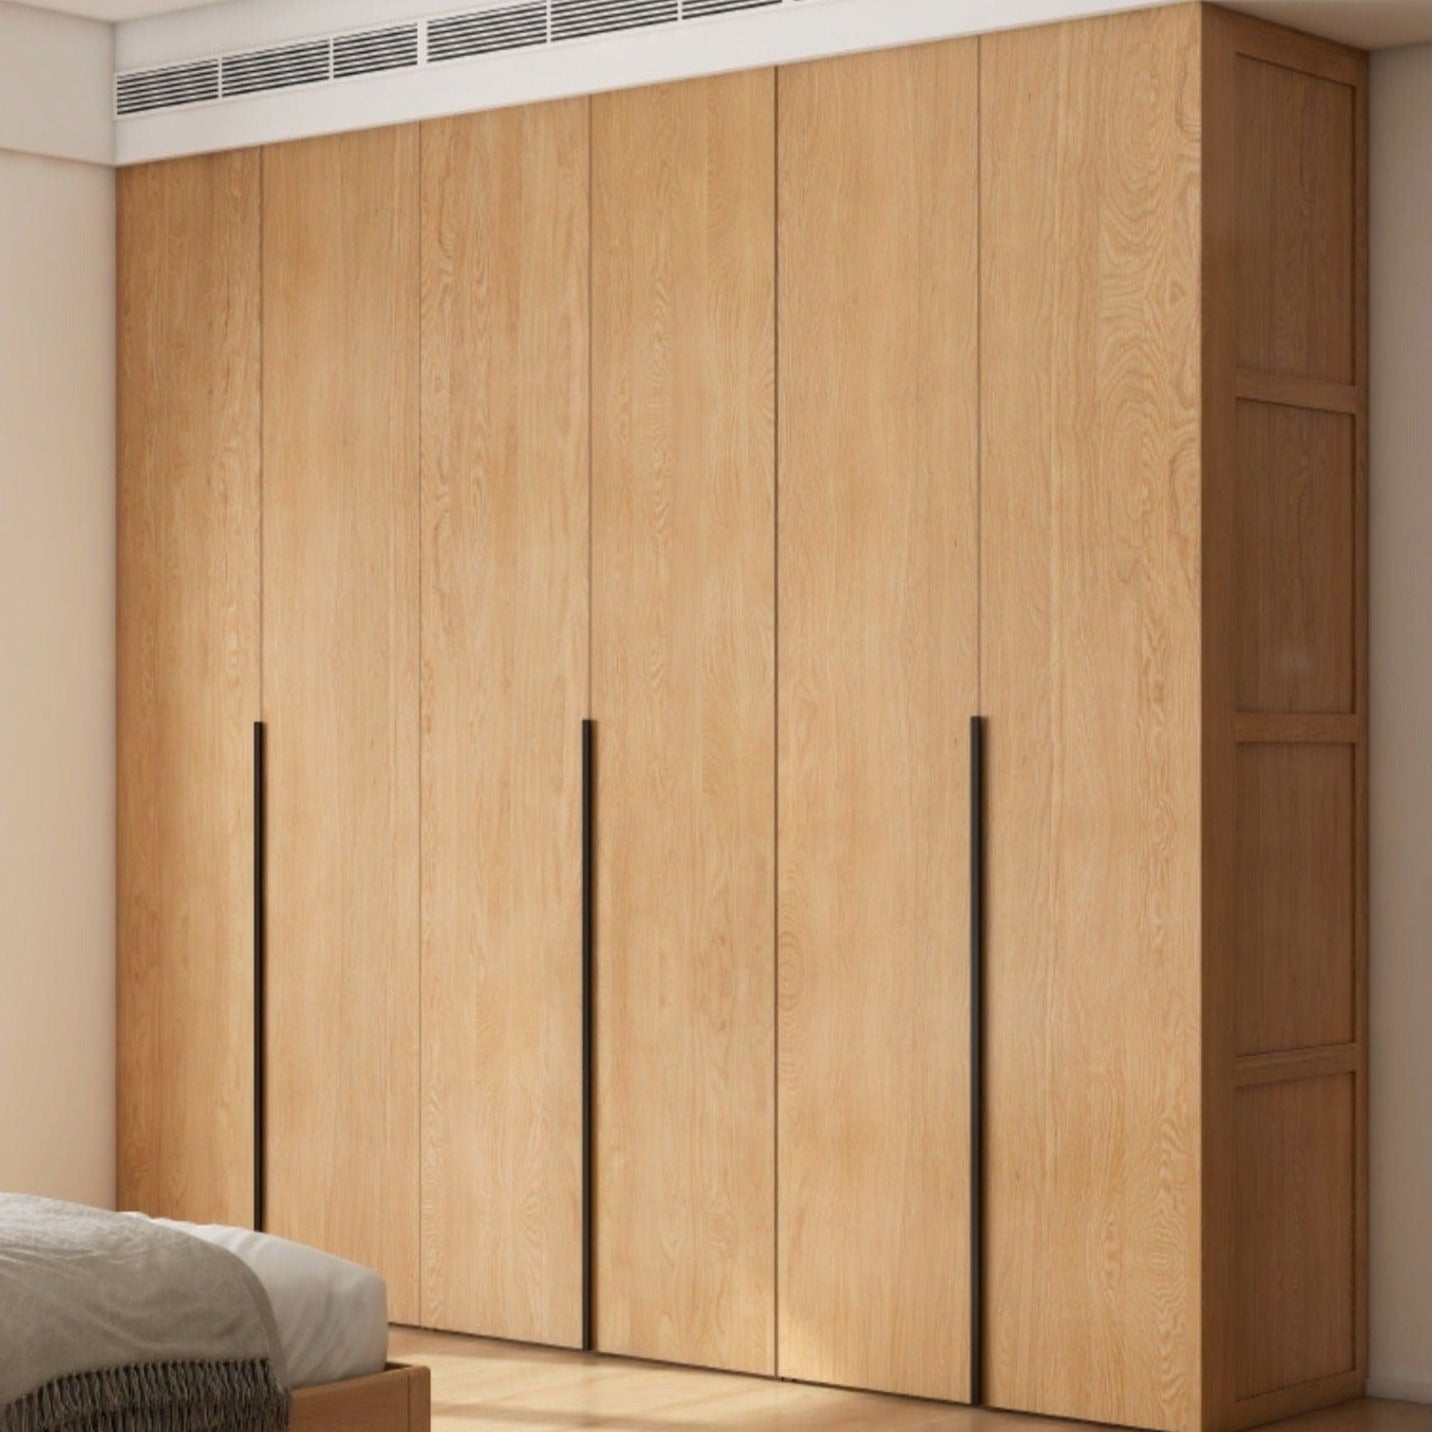 Oak solid wood high wardrobe modern-